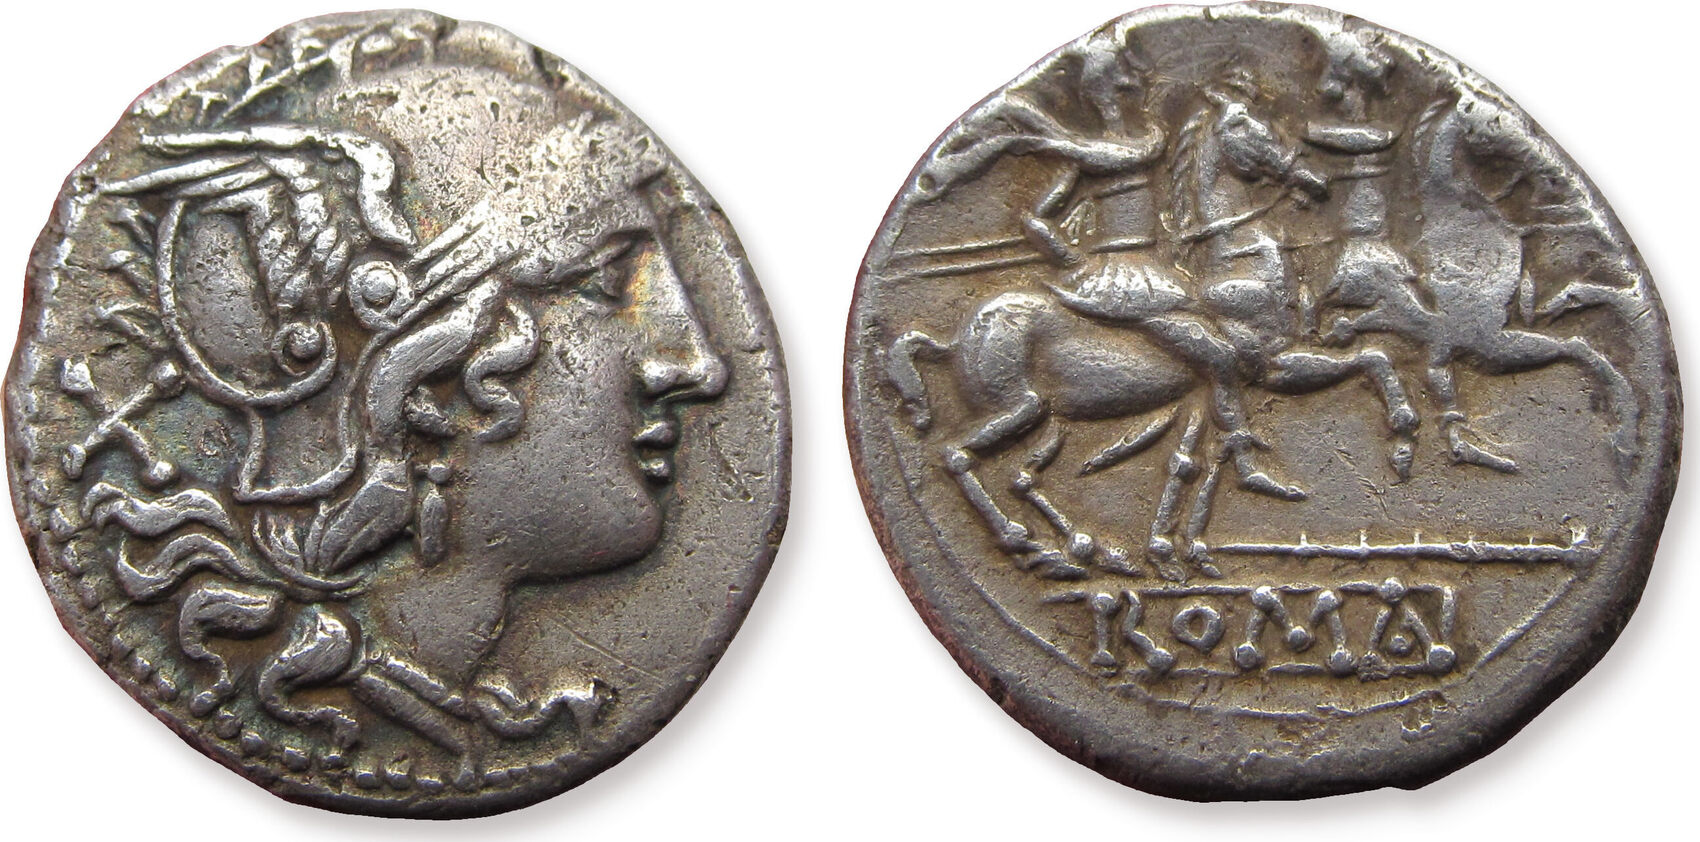 Serie vf. Римская Республика 46 год монета женская голова лошади. Сергиус Силус купить монету.